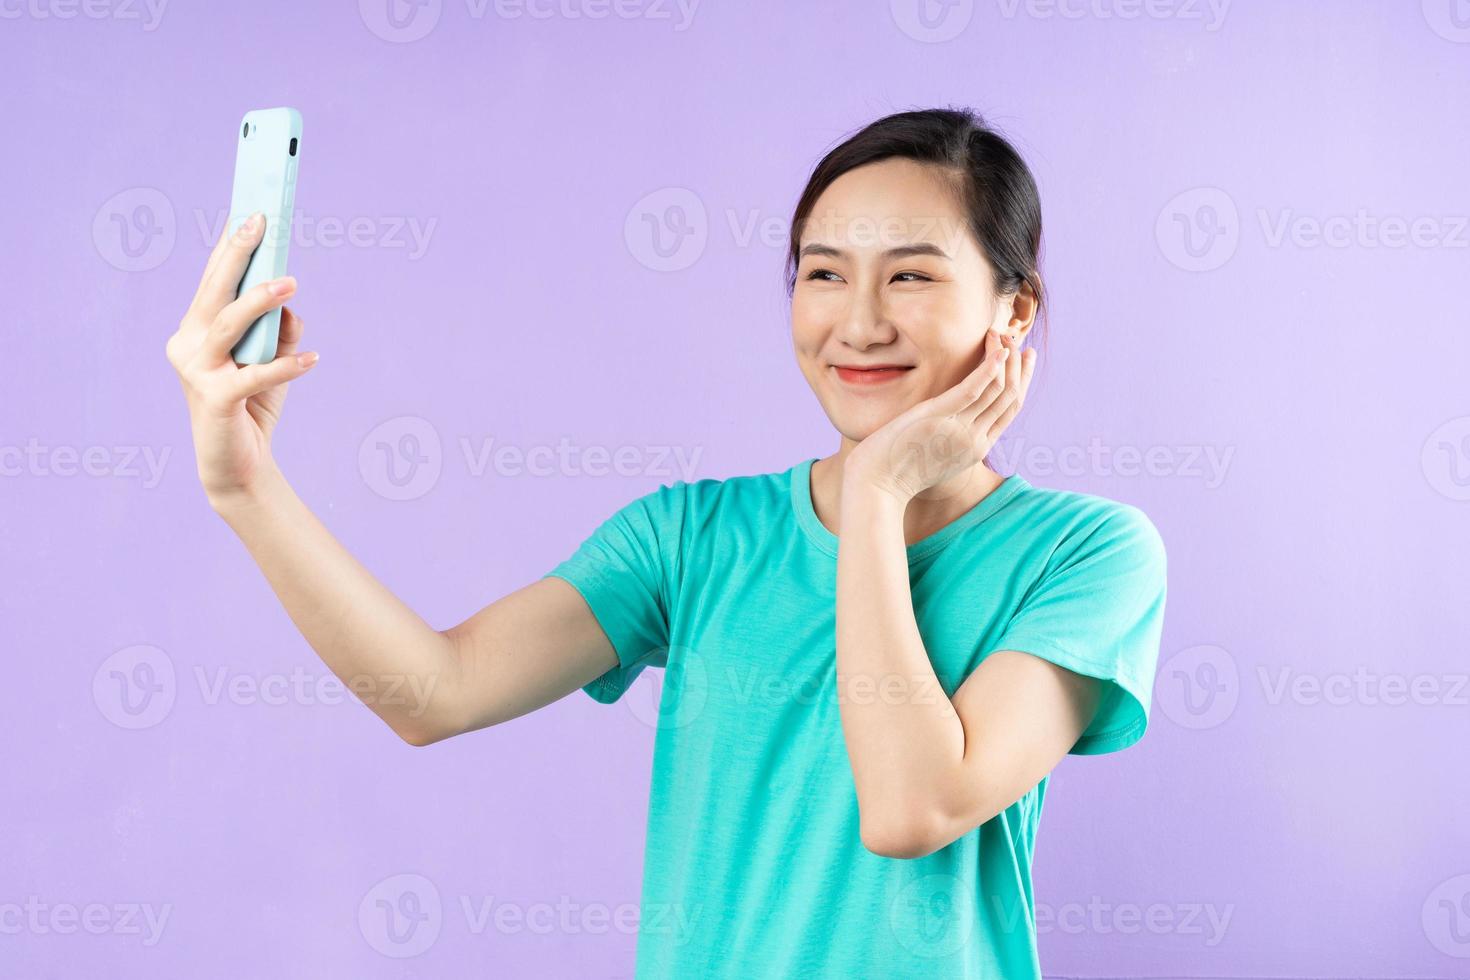 bellissimo ritratto di donna asiatica, isolato su sfondo viola foto